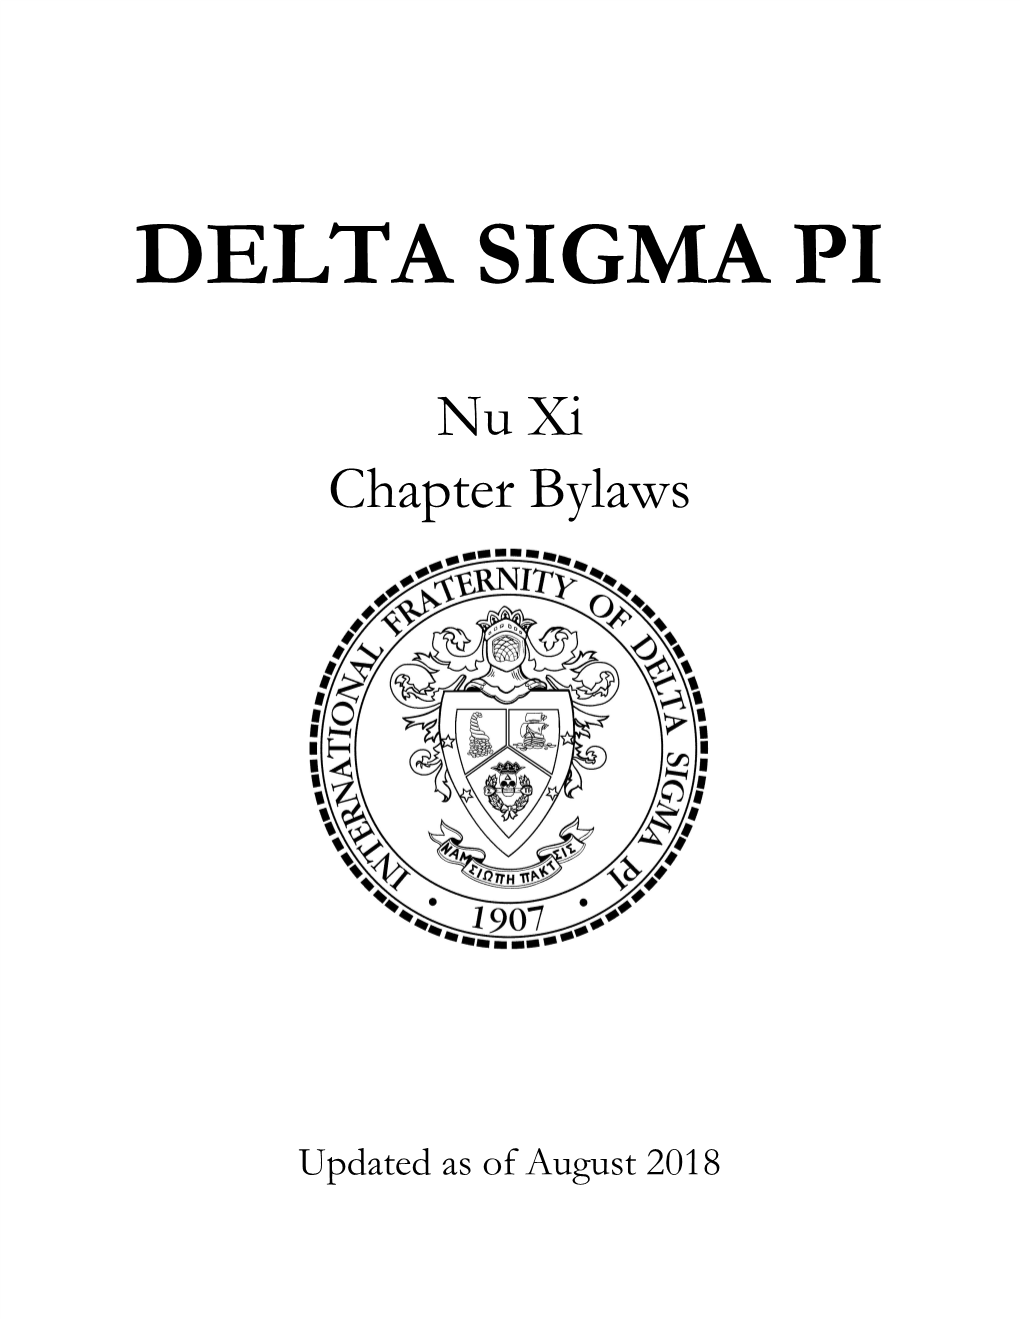 Delta Sigma Pi